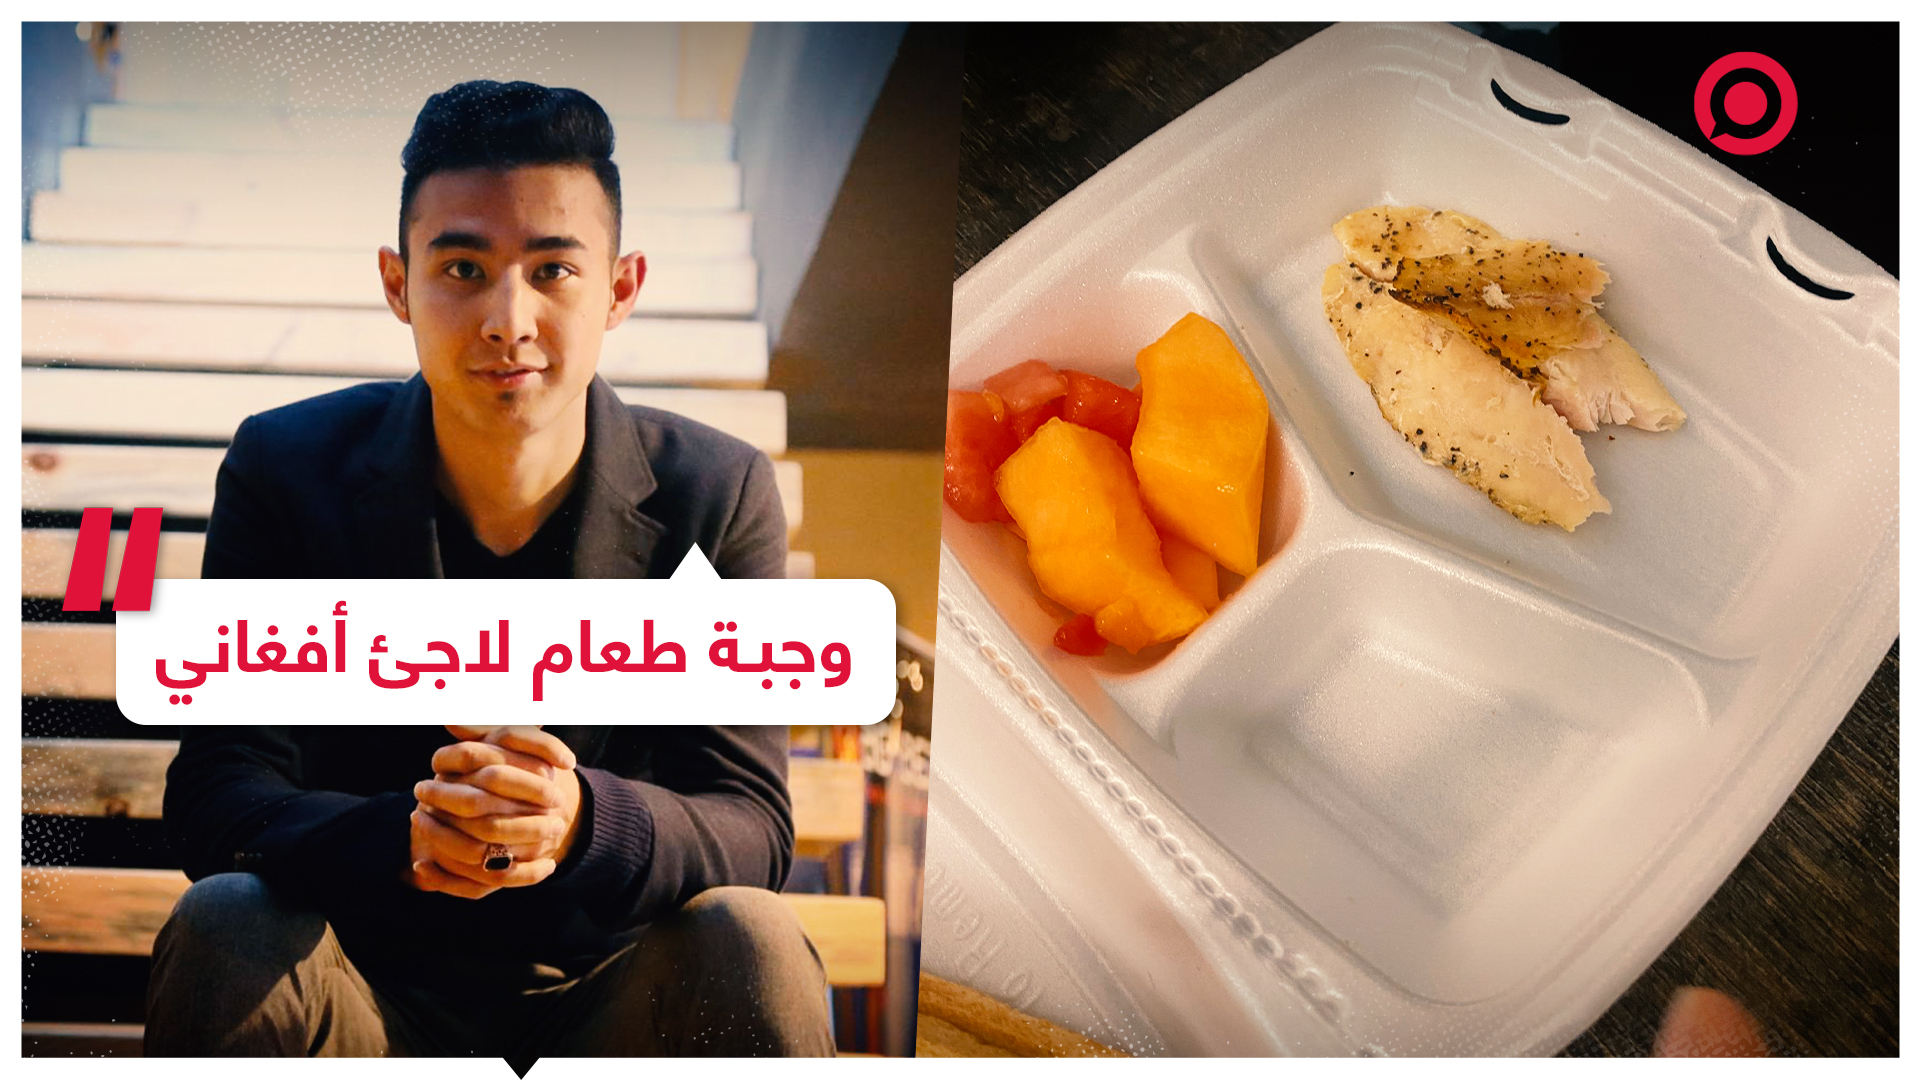 لاجئ أفغاني في الولايات المتحدة يشارك صورة وجبة طعام قُدمت له